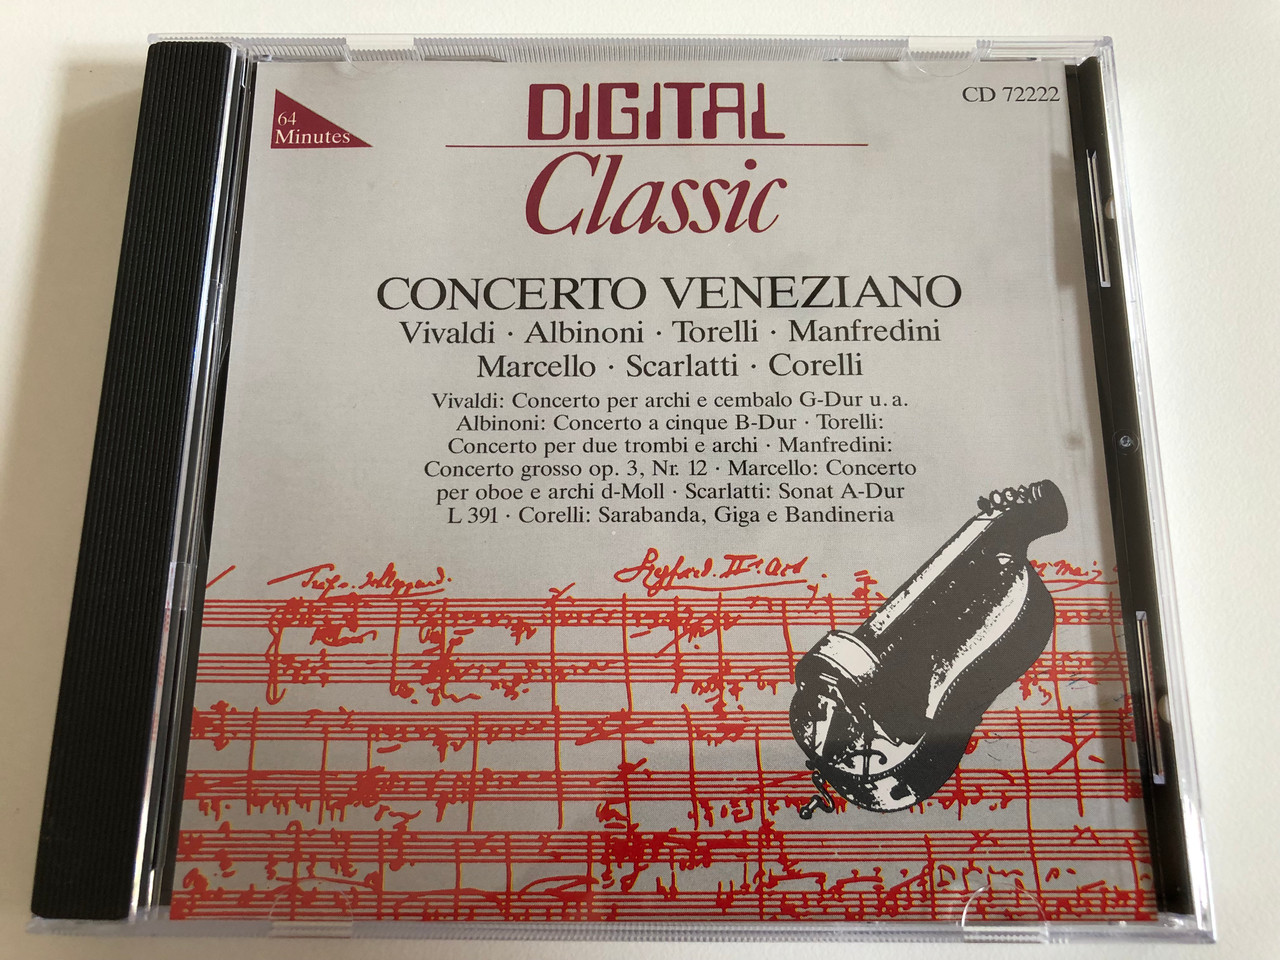 https://cdn10.bigcommerce.com/s-62bdpkt7pb/products/31399/images/184765/Concerto_Veneziano_-_Vivaldi_Albinoni_Torelli_Manfredini_Marcello_Scarlatti_Corelli_Vivaldi_Concerto_per_archi_e_cembalo_G-Dur_u.a._Albinoni_Concerto_a_cinque_B-Dur_Torelli_Concerto_1__64373.1626345601.1280.1280.JPG?c=2&_gl=1*zfn8vz*_ga*OTE2MzI1NzU5LjE2MjY0NjA3Nzg.*_ga_WS2VZYPC6G*MTYyNjY2ODYyMS4zLjEuMTYyNjY2ODkyMi42MA..